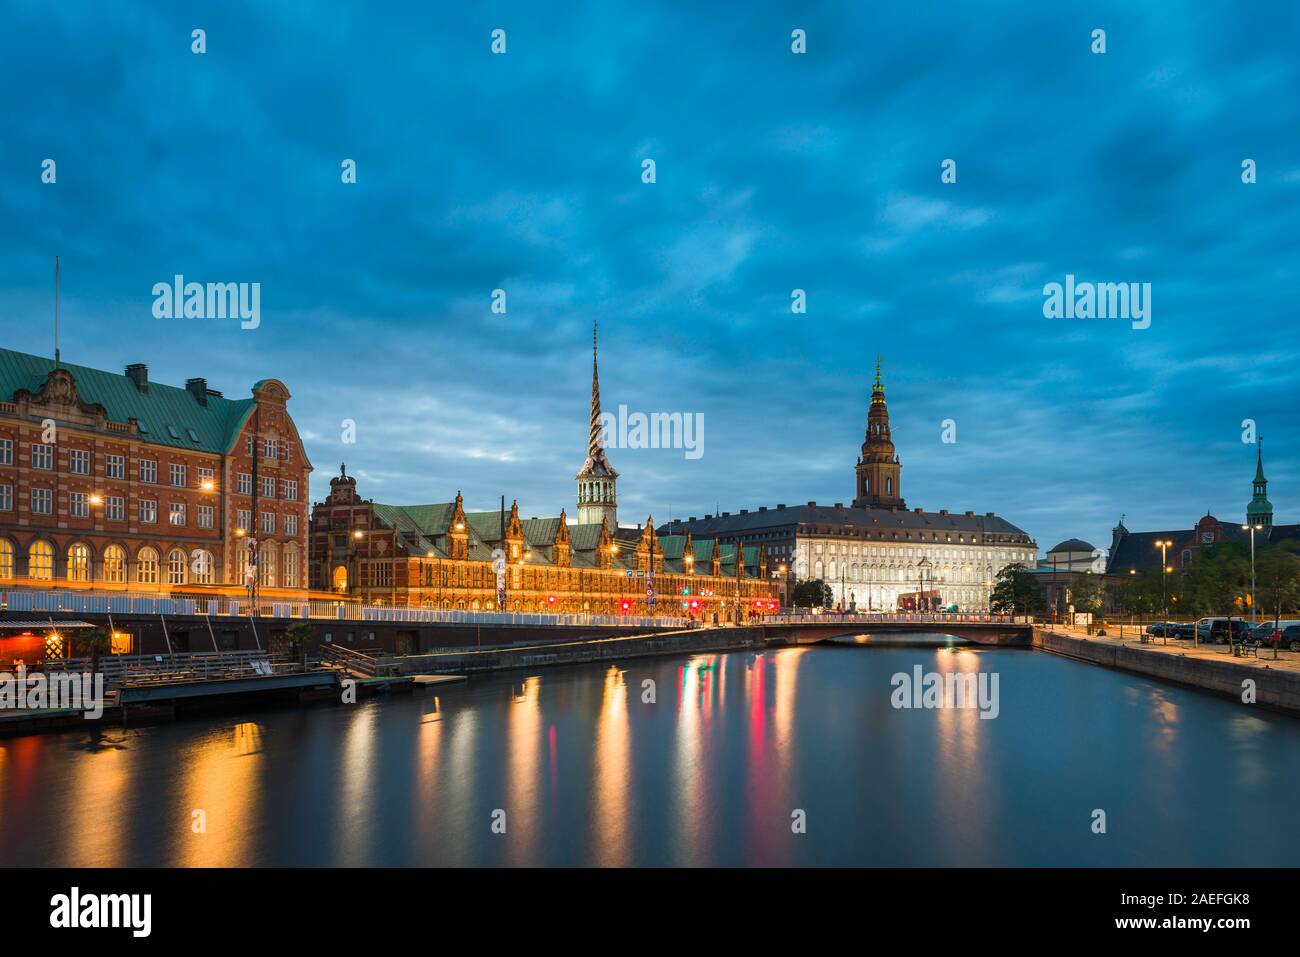 Noche de Copenhague, vista de Slotsholmen Borse canal con el edificio de la bolsa y Christianborg Slot (palacio), visible en la distancia, Copenhague. Foto de stock